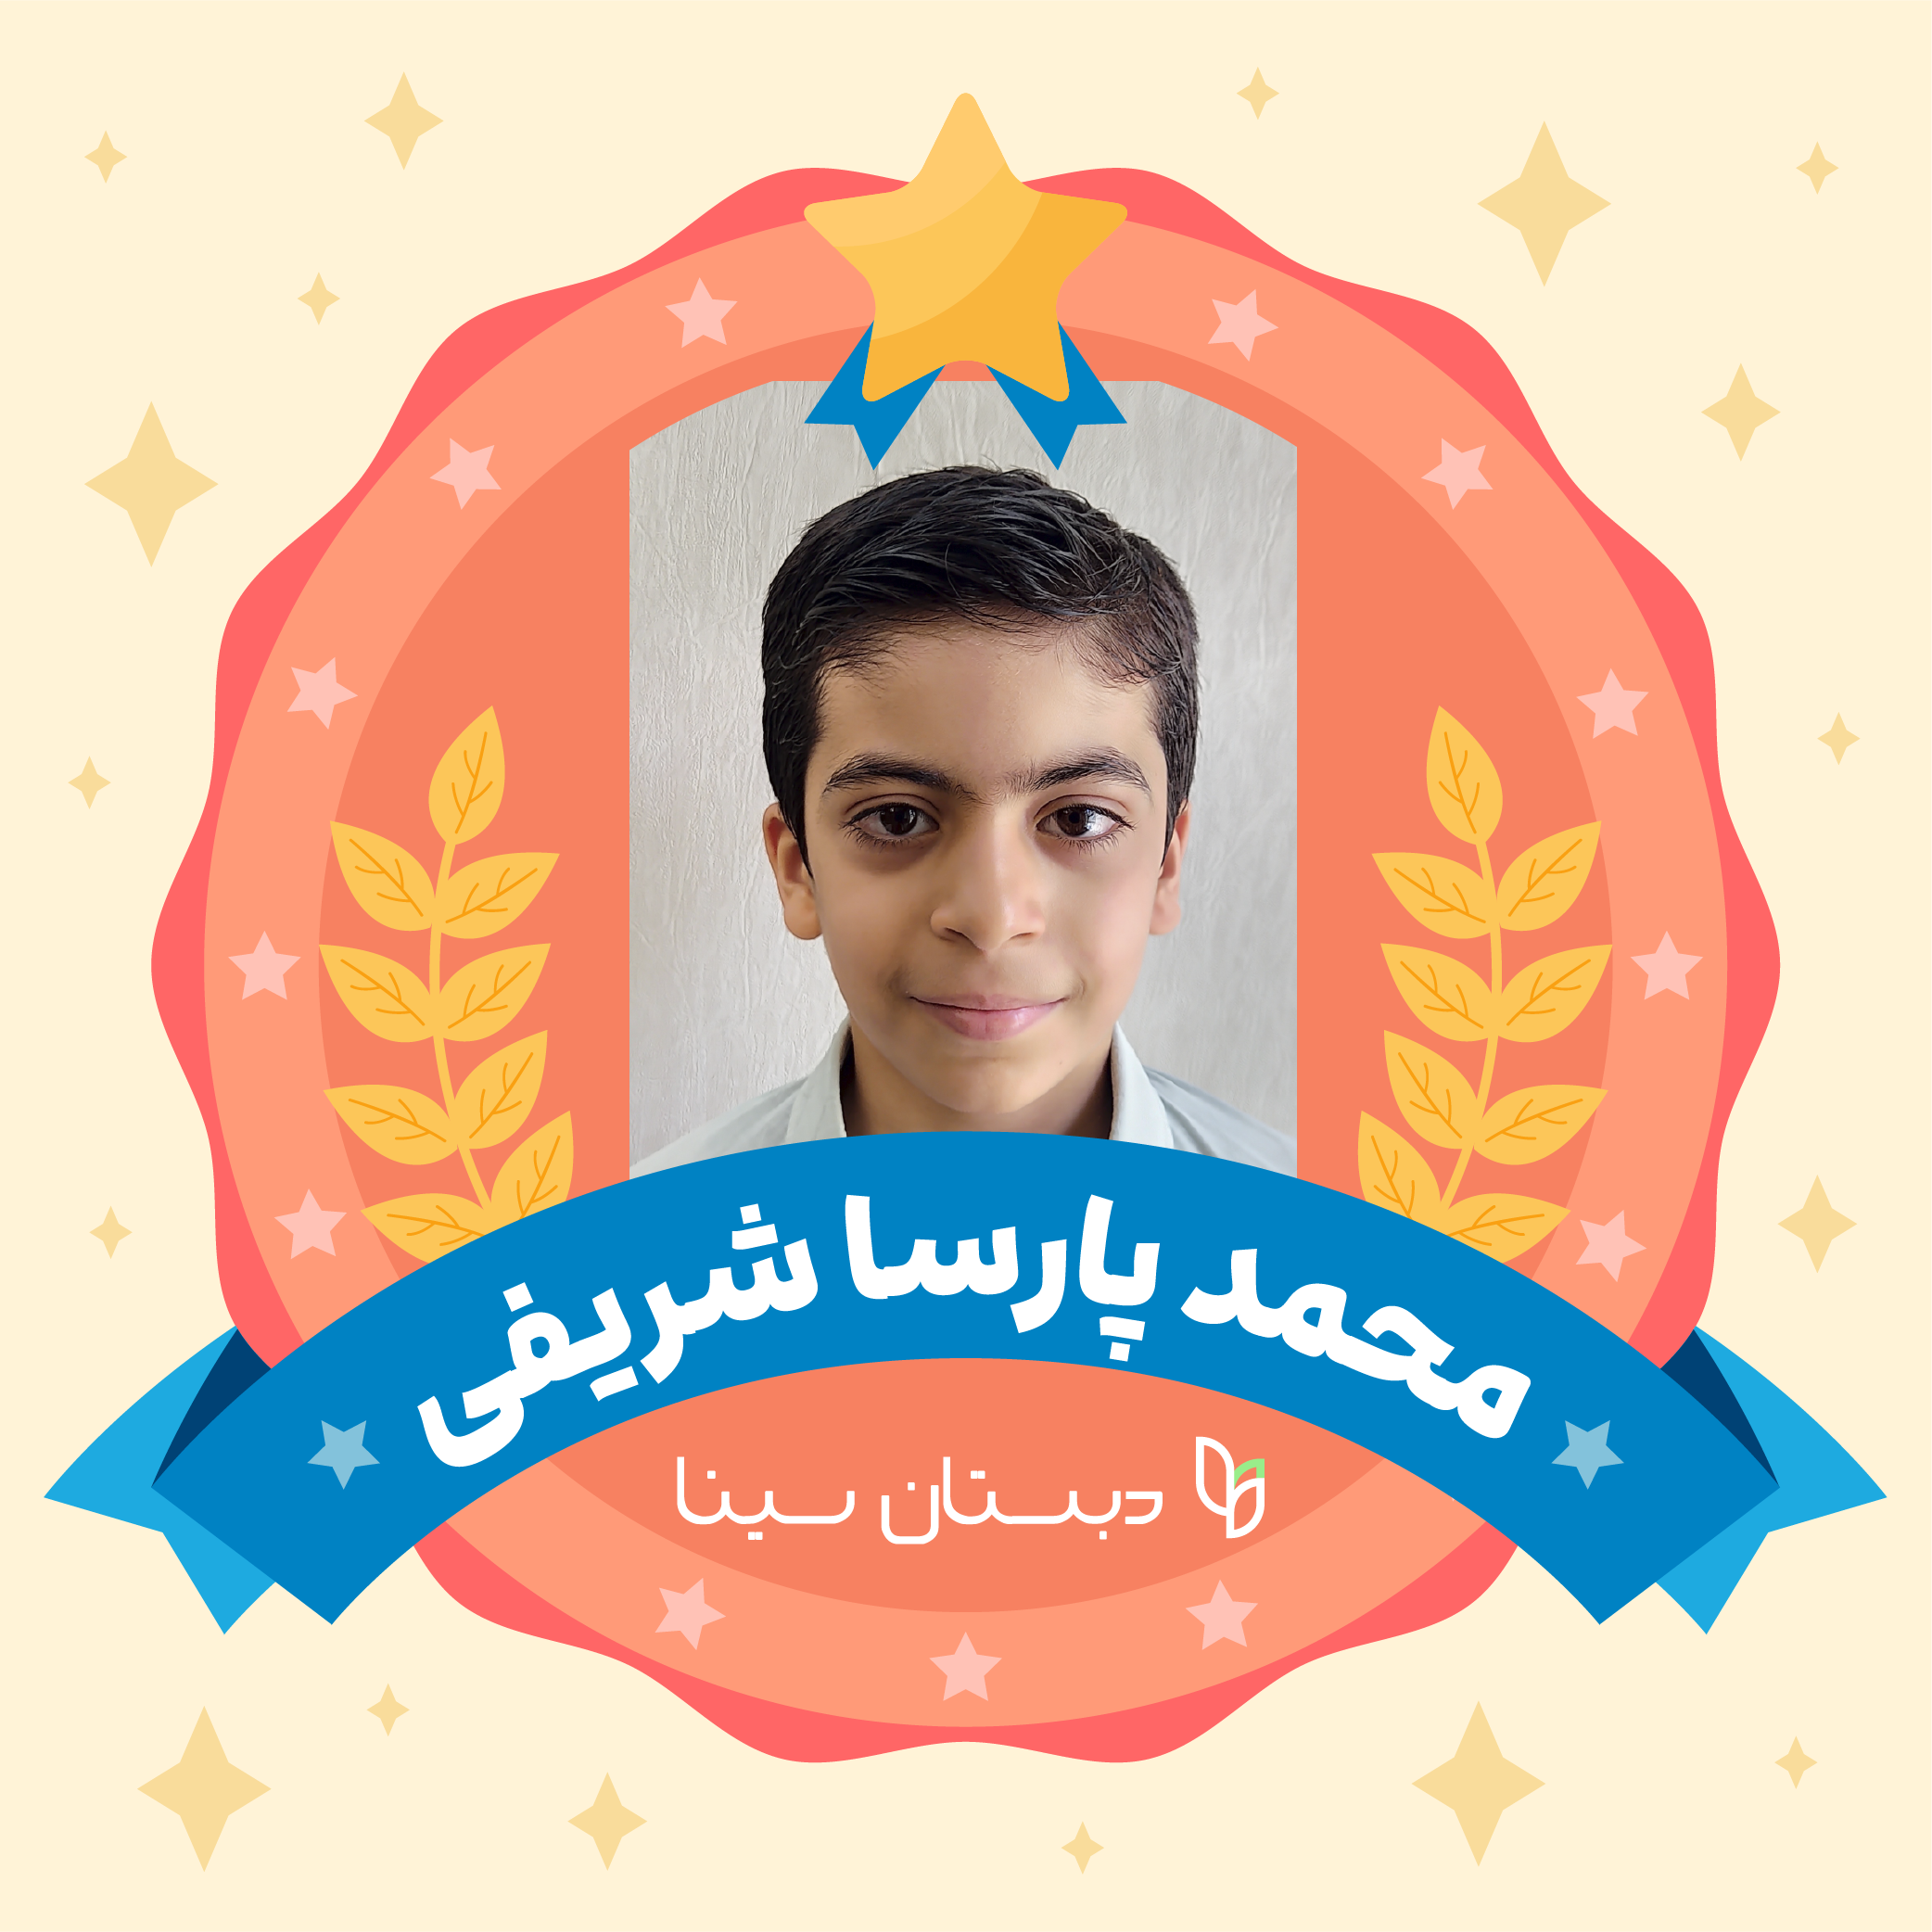 کسب مقام اول در مسابقات کتابخوانی در سطح منطقه​ دبستان پسرانه سینا پارسا شریفی